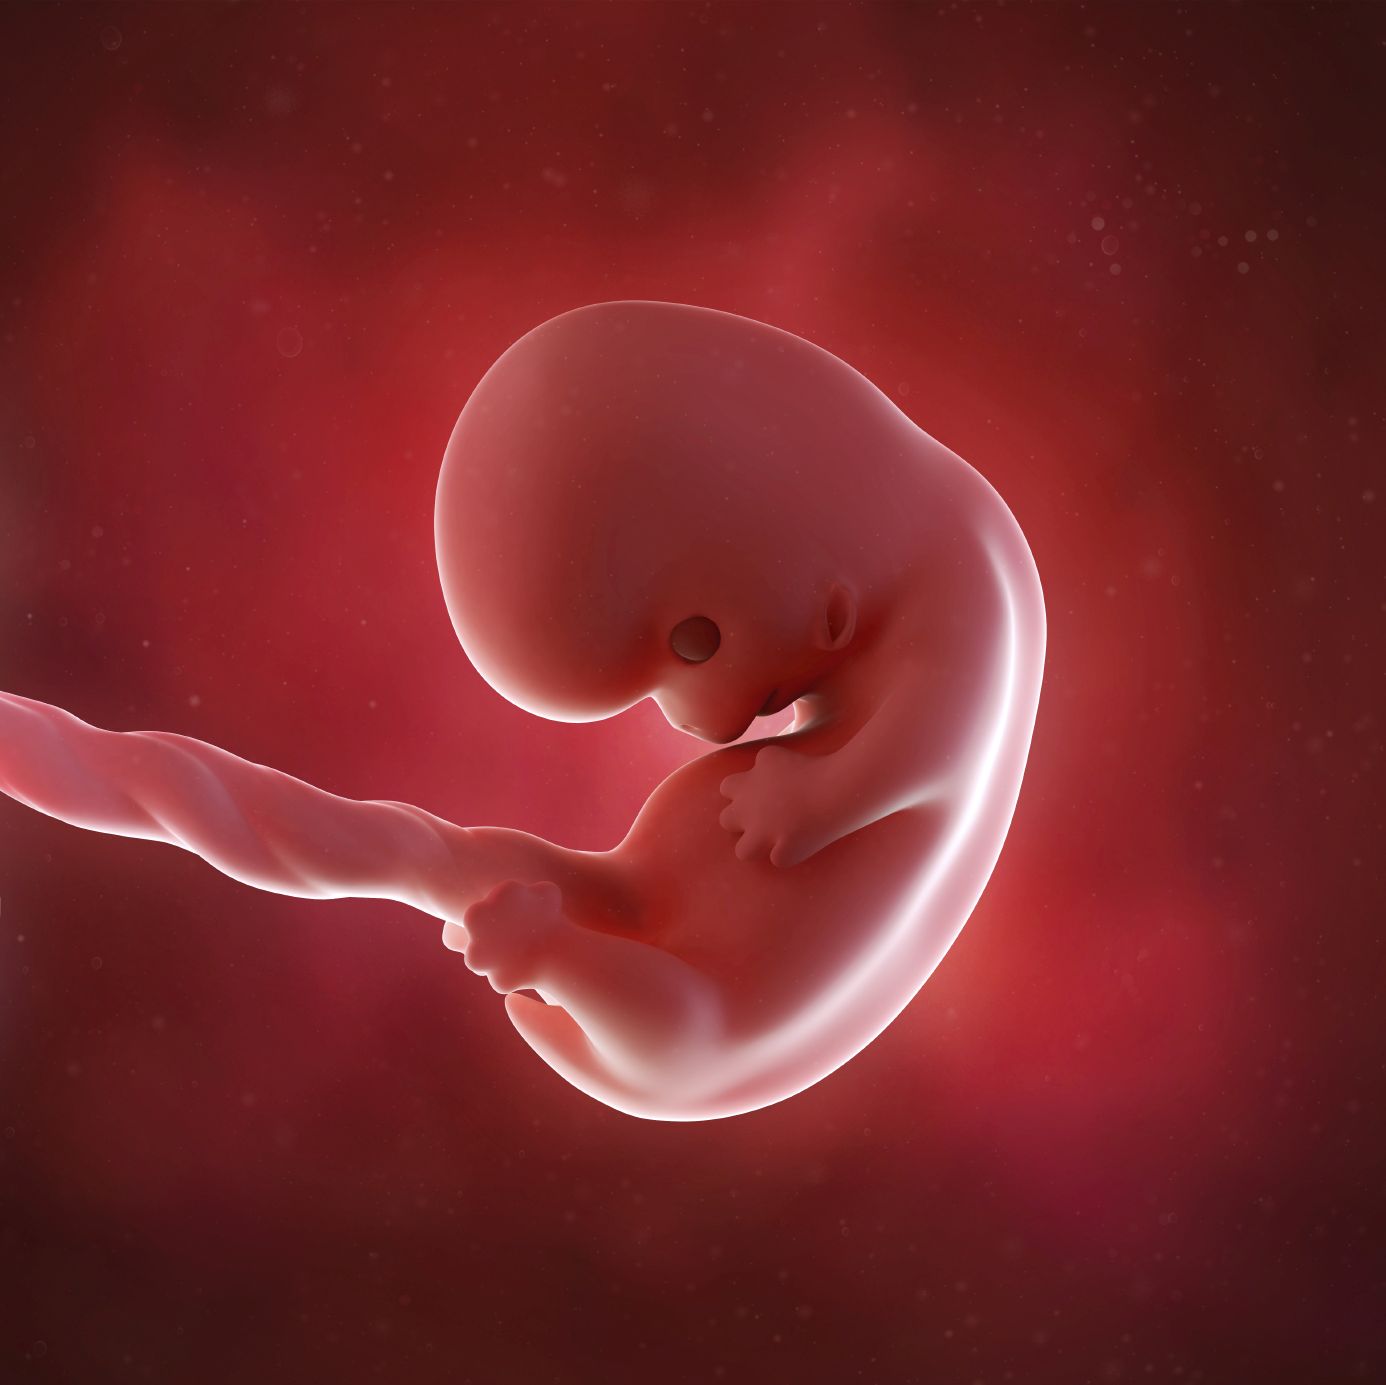 fetus 8 weeks